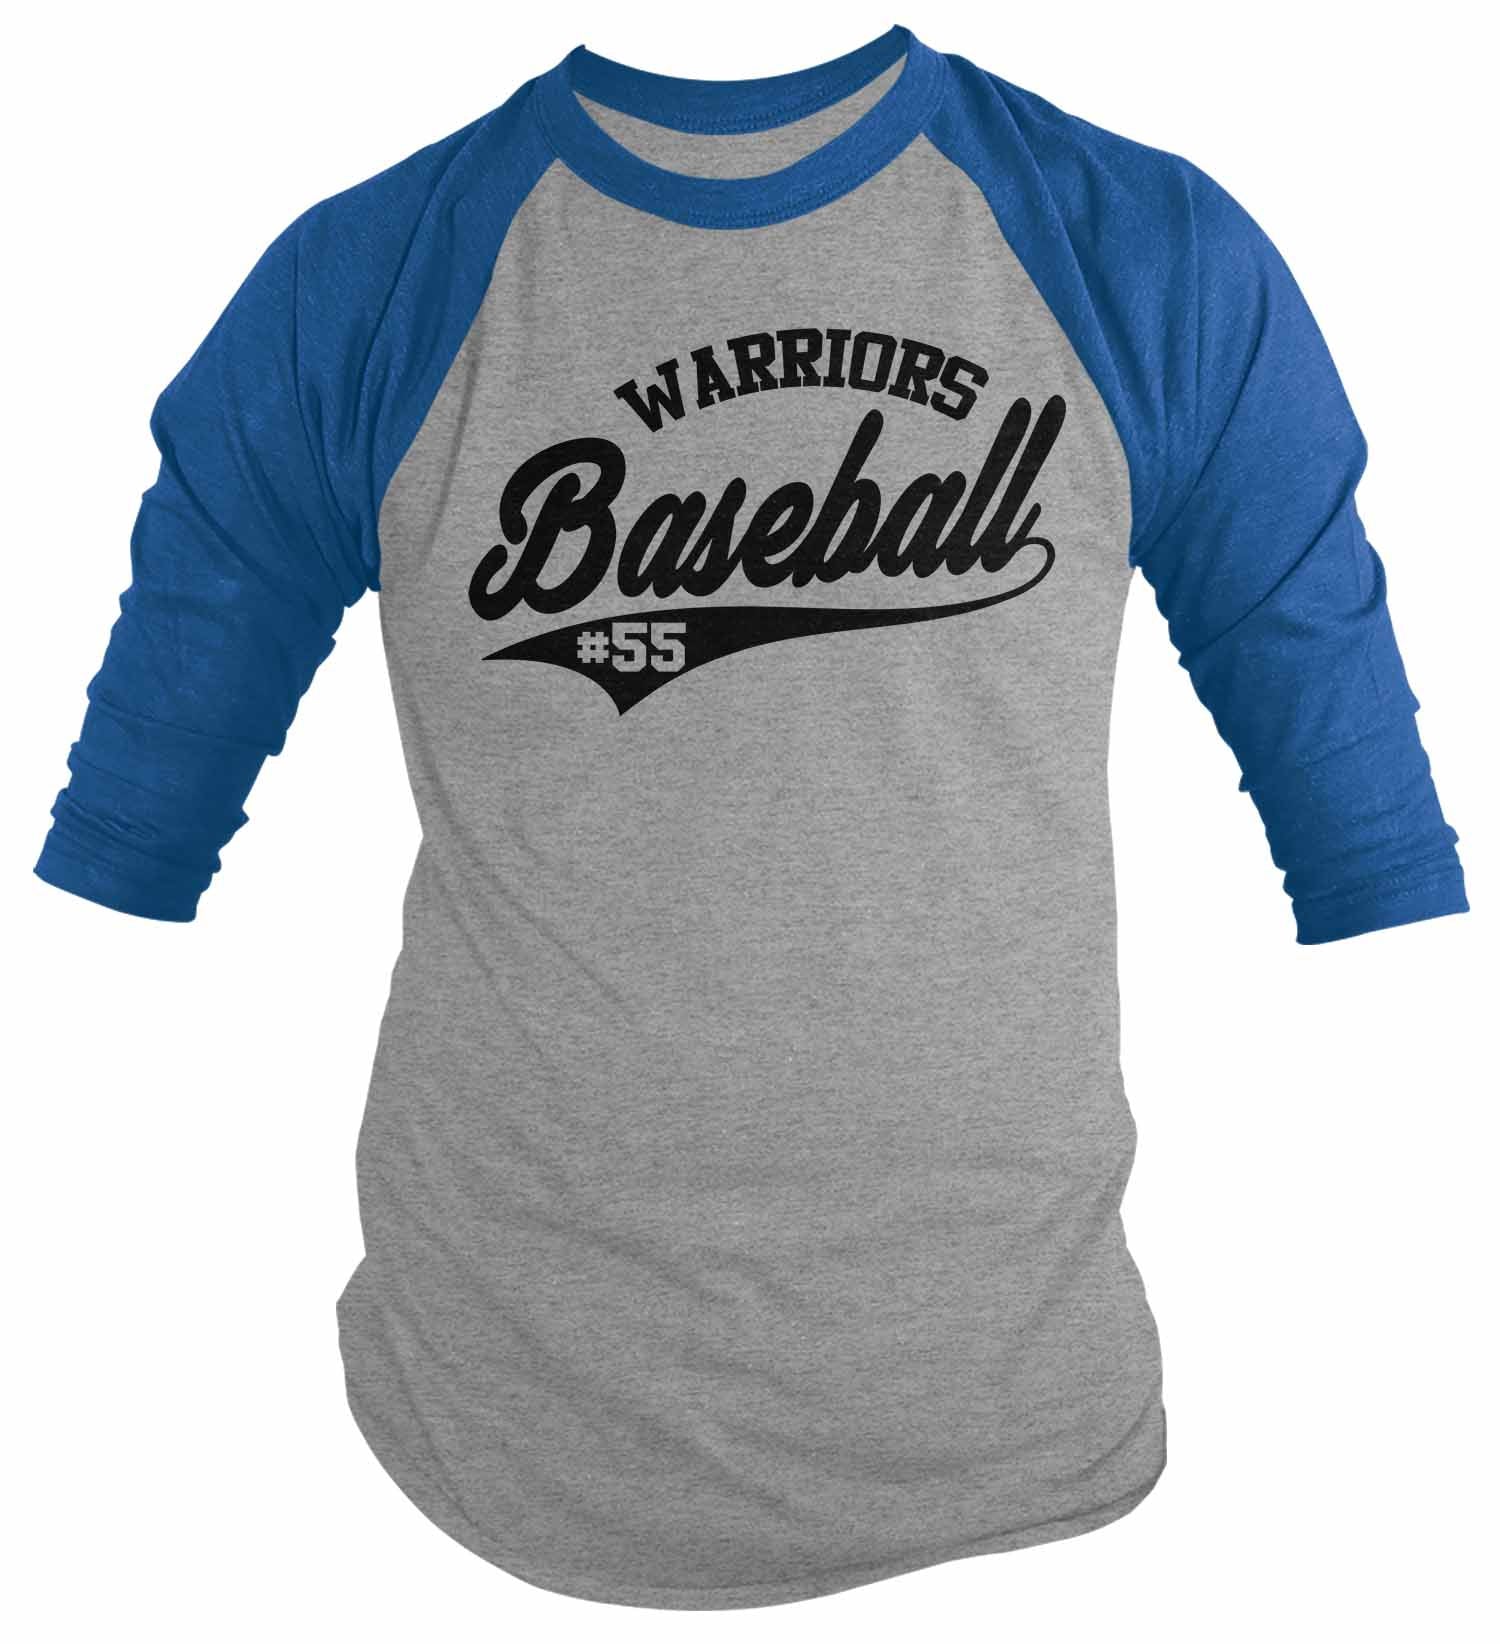 vintage baseball tee shirts